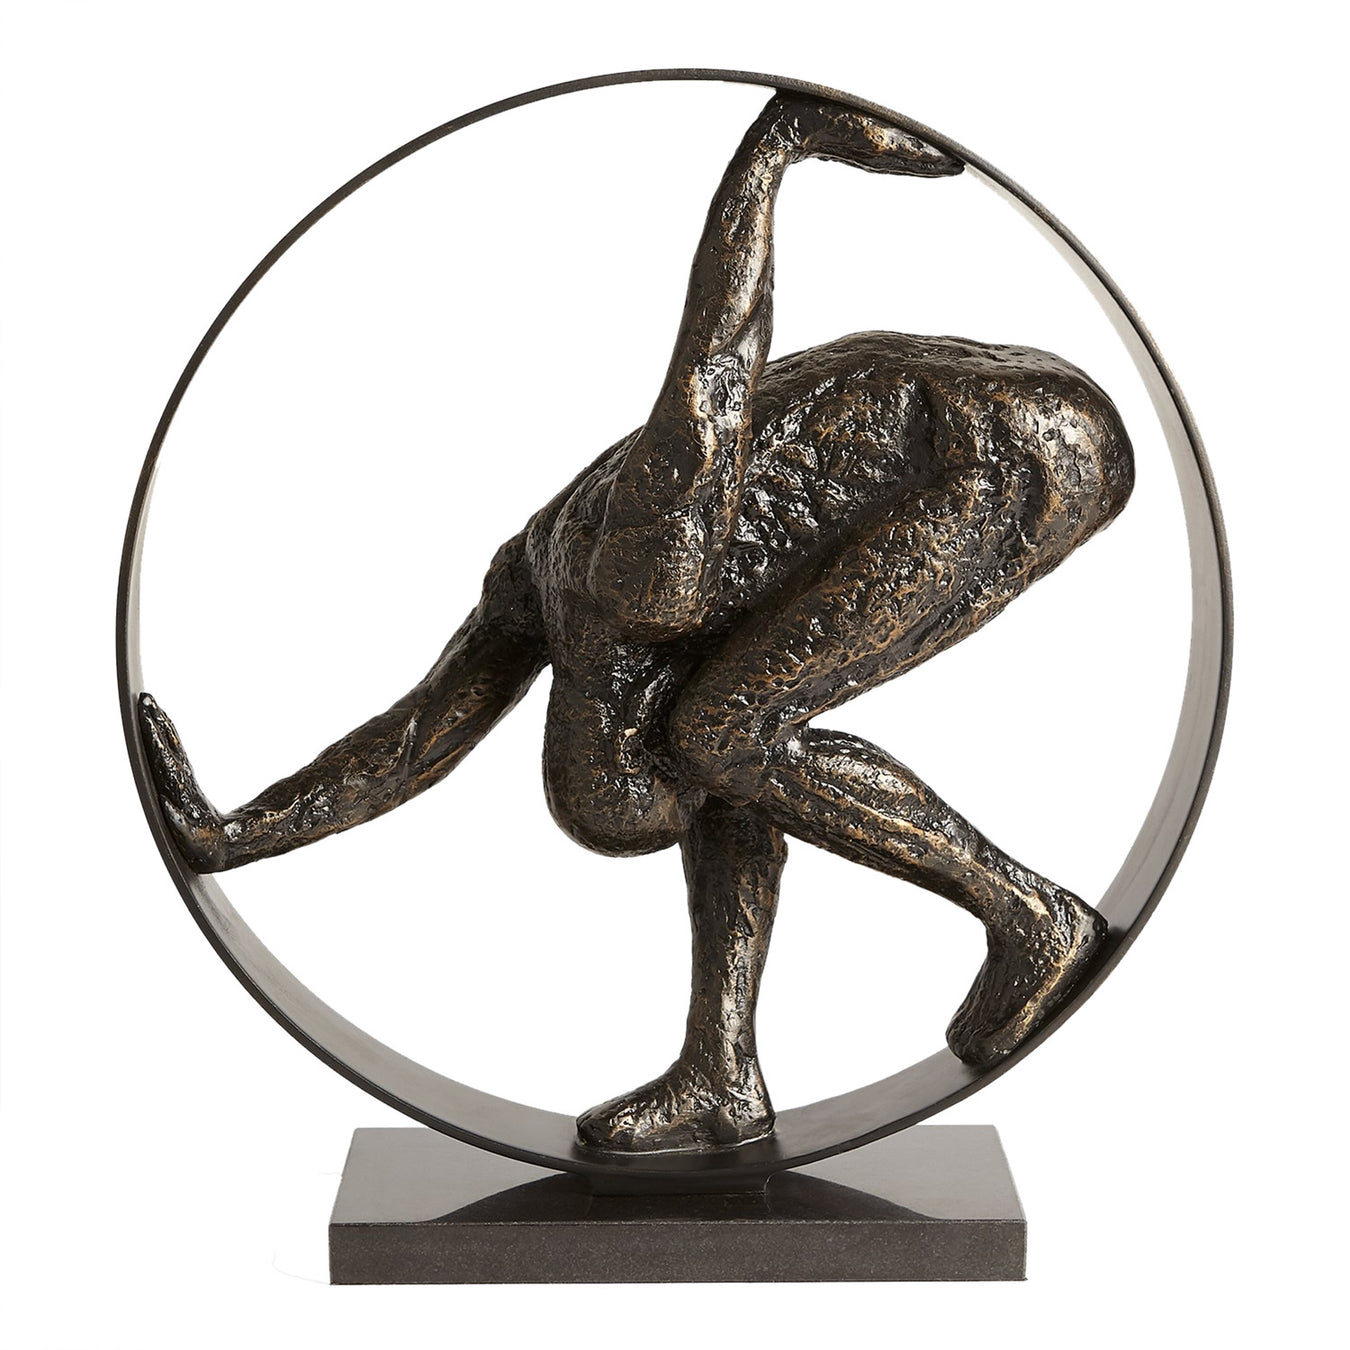 Modern Acrobat Sculptures for Sale